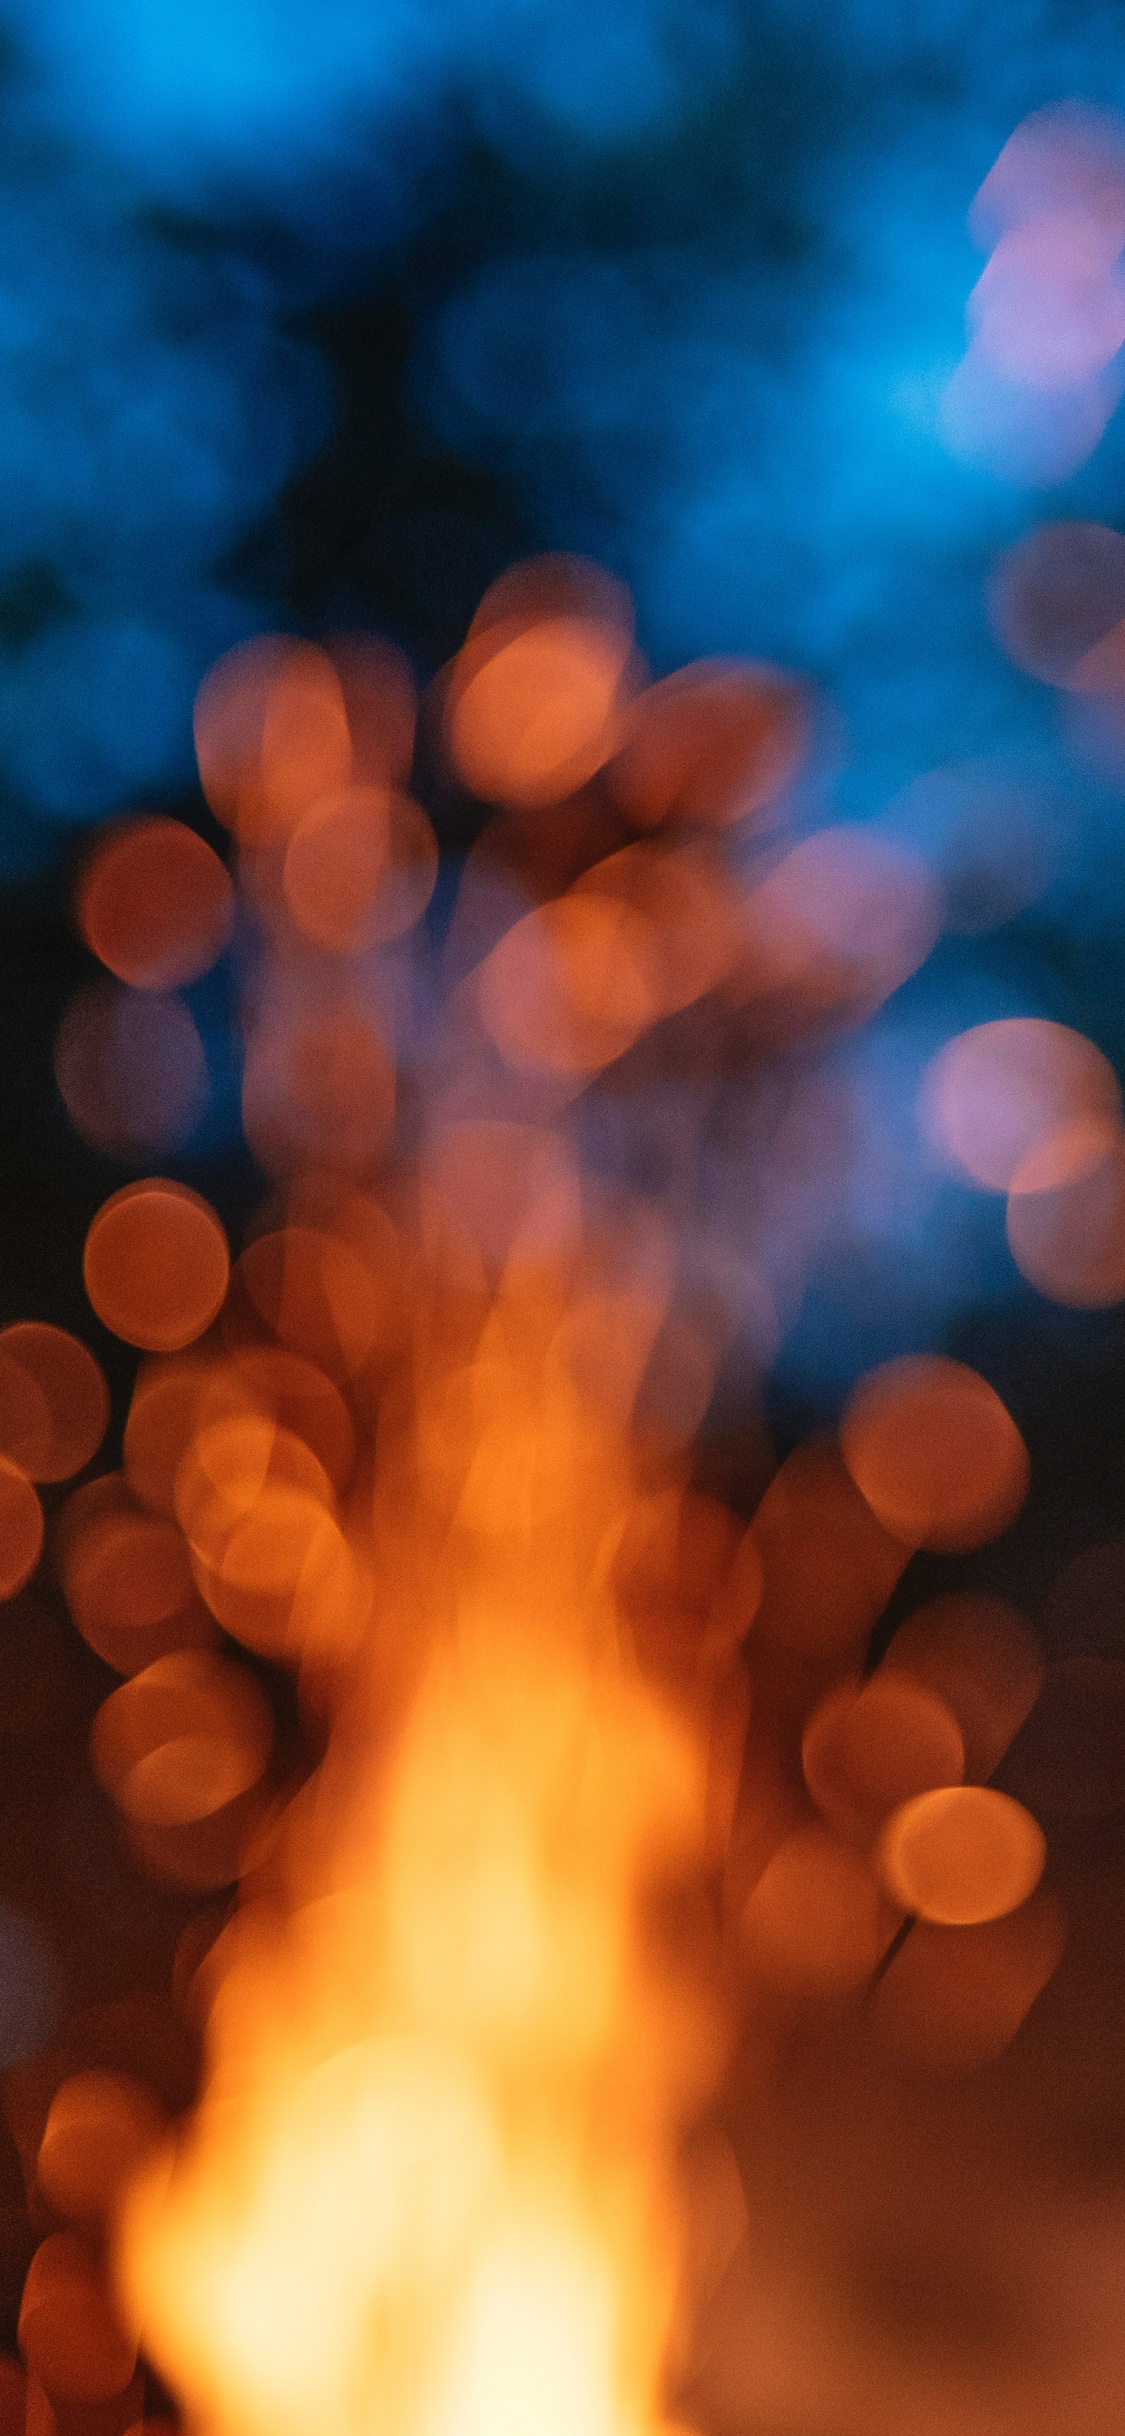 光, 热, 火焰, 天空, 篝火 壁纸 1125x2436 允许